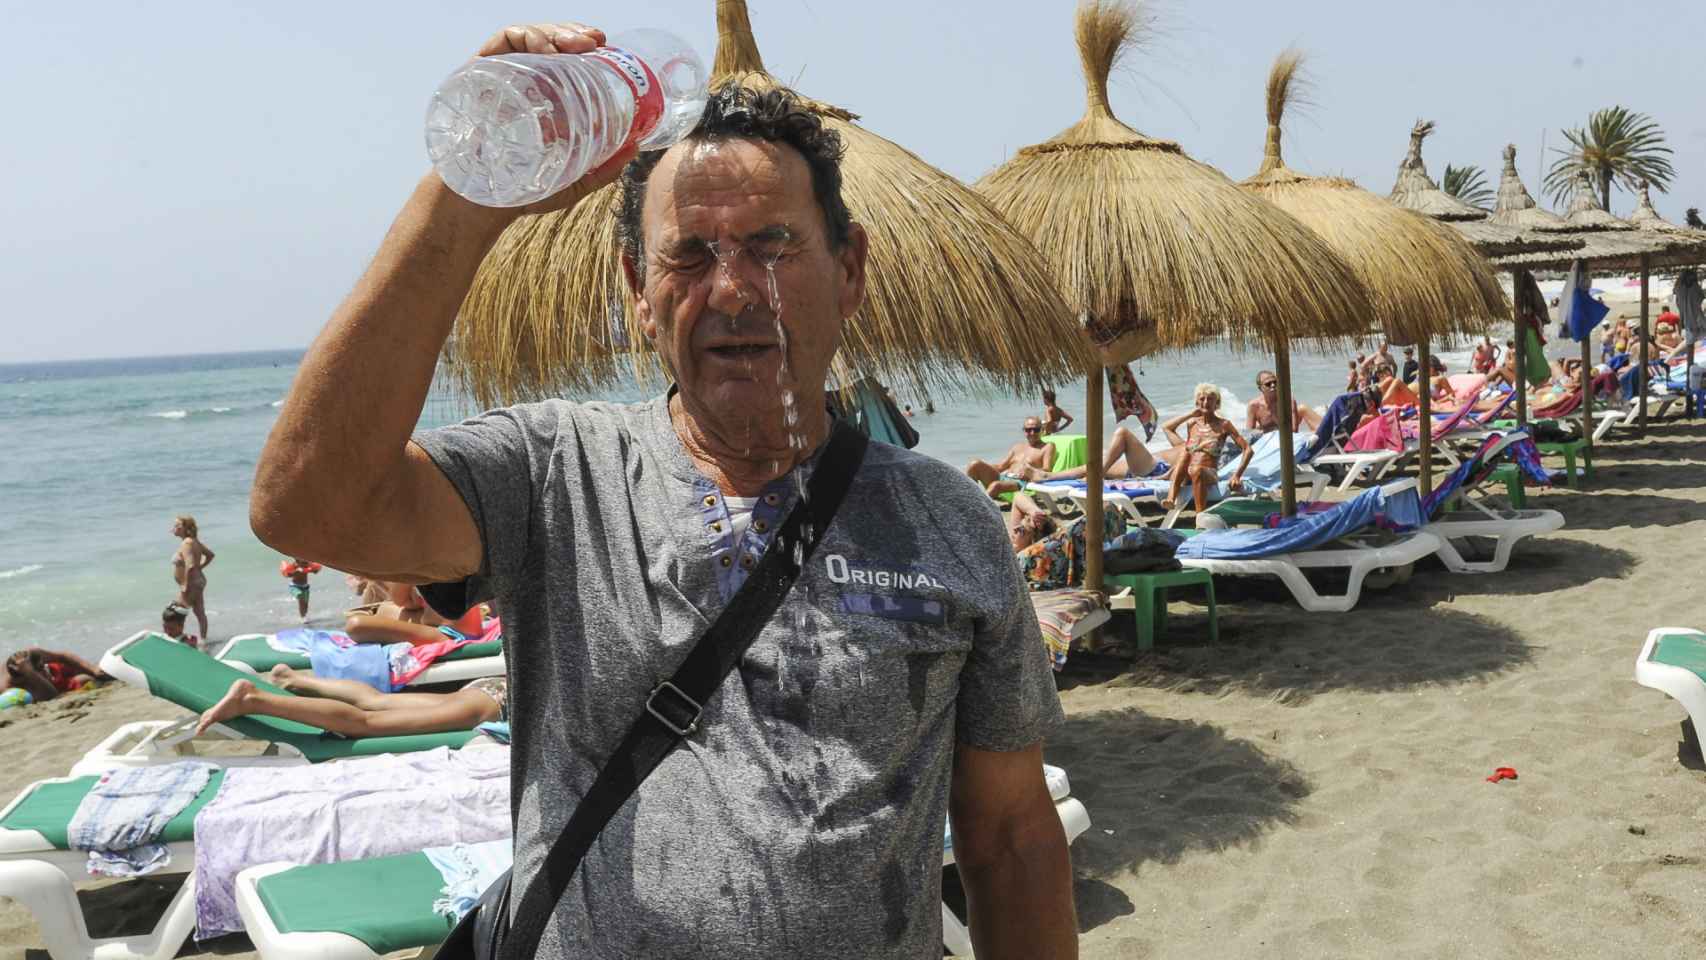 La playa de Marbella en 2018, con temperaturas extremas a las que se acercará el verano de 2019.